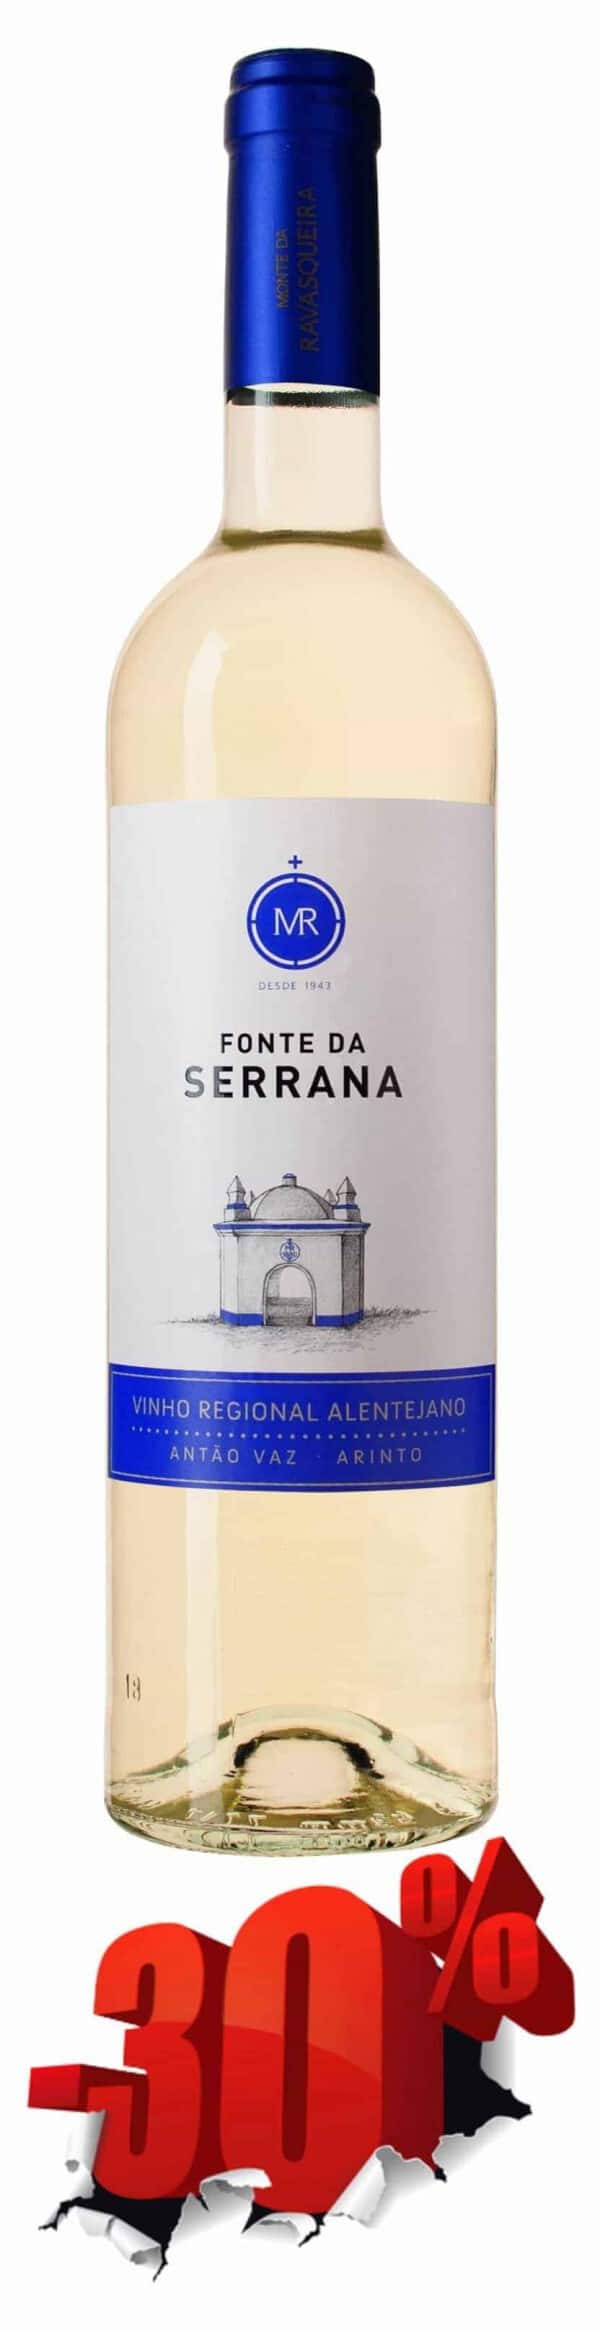 Portugalské víno Fonte Da Serrana Branco 2014 na eshopu vína z Portugalska